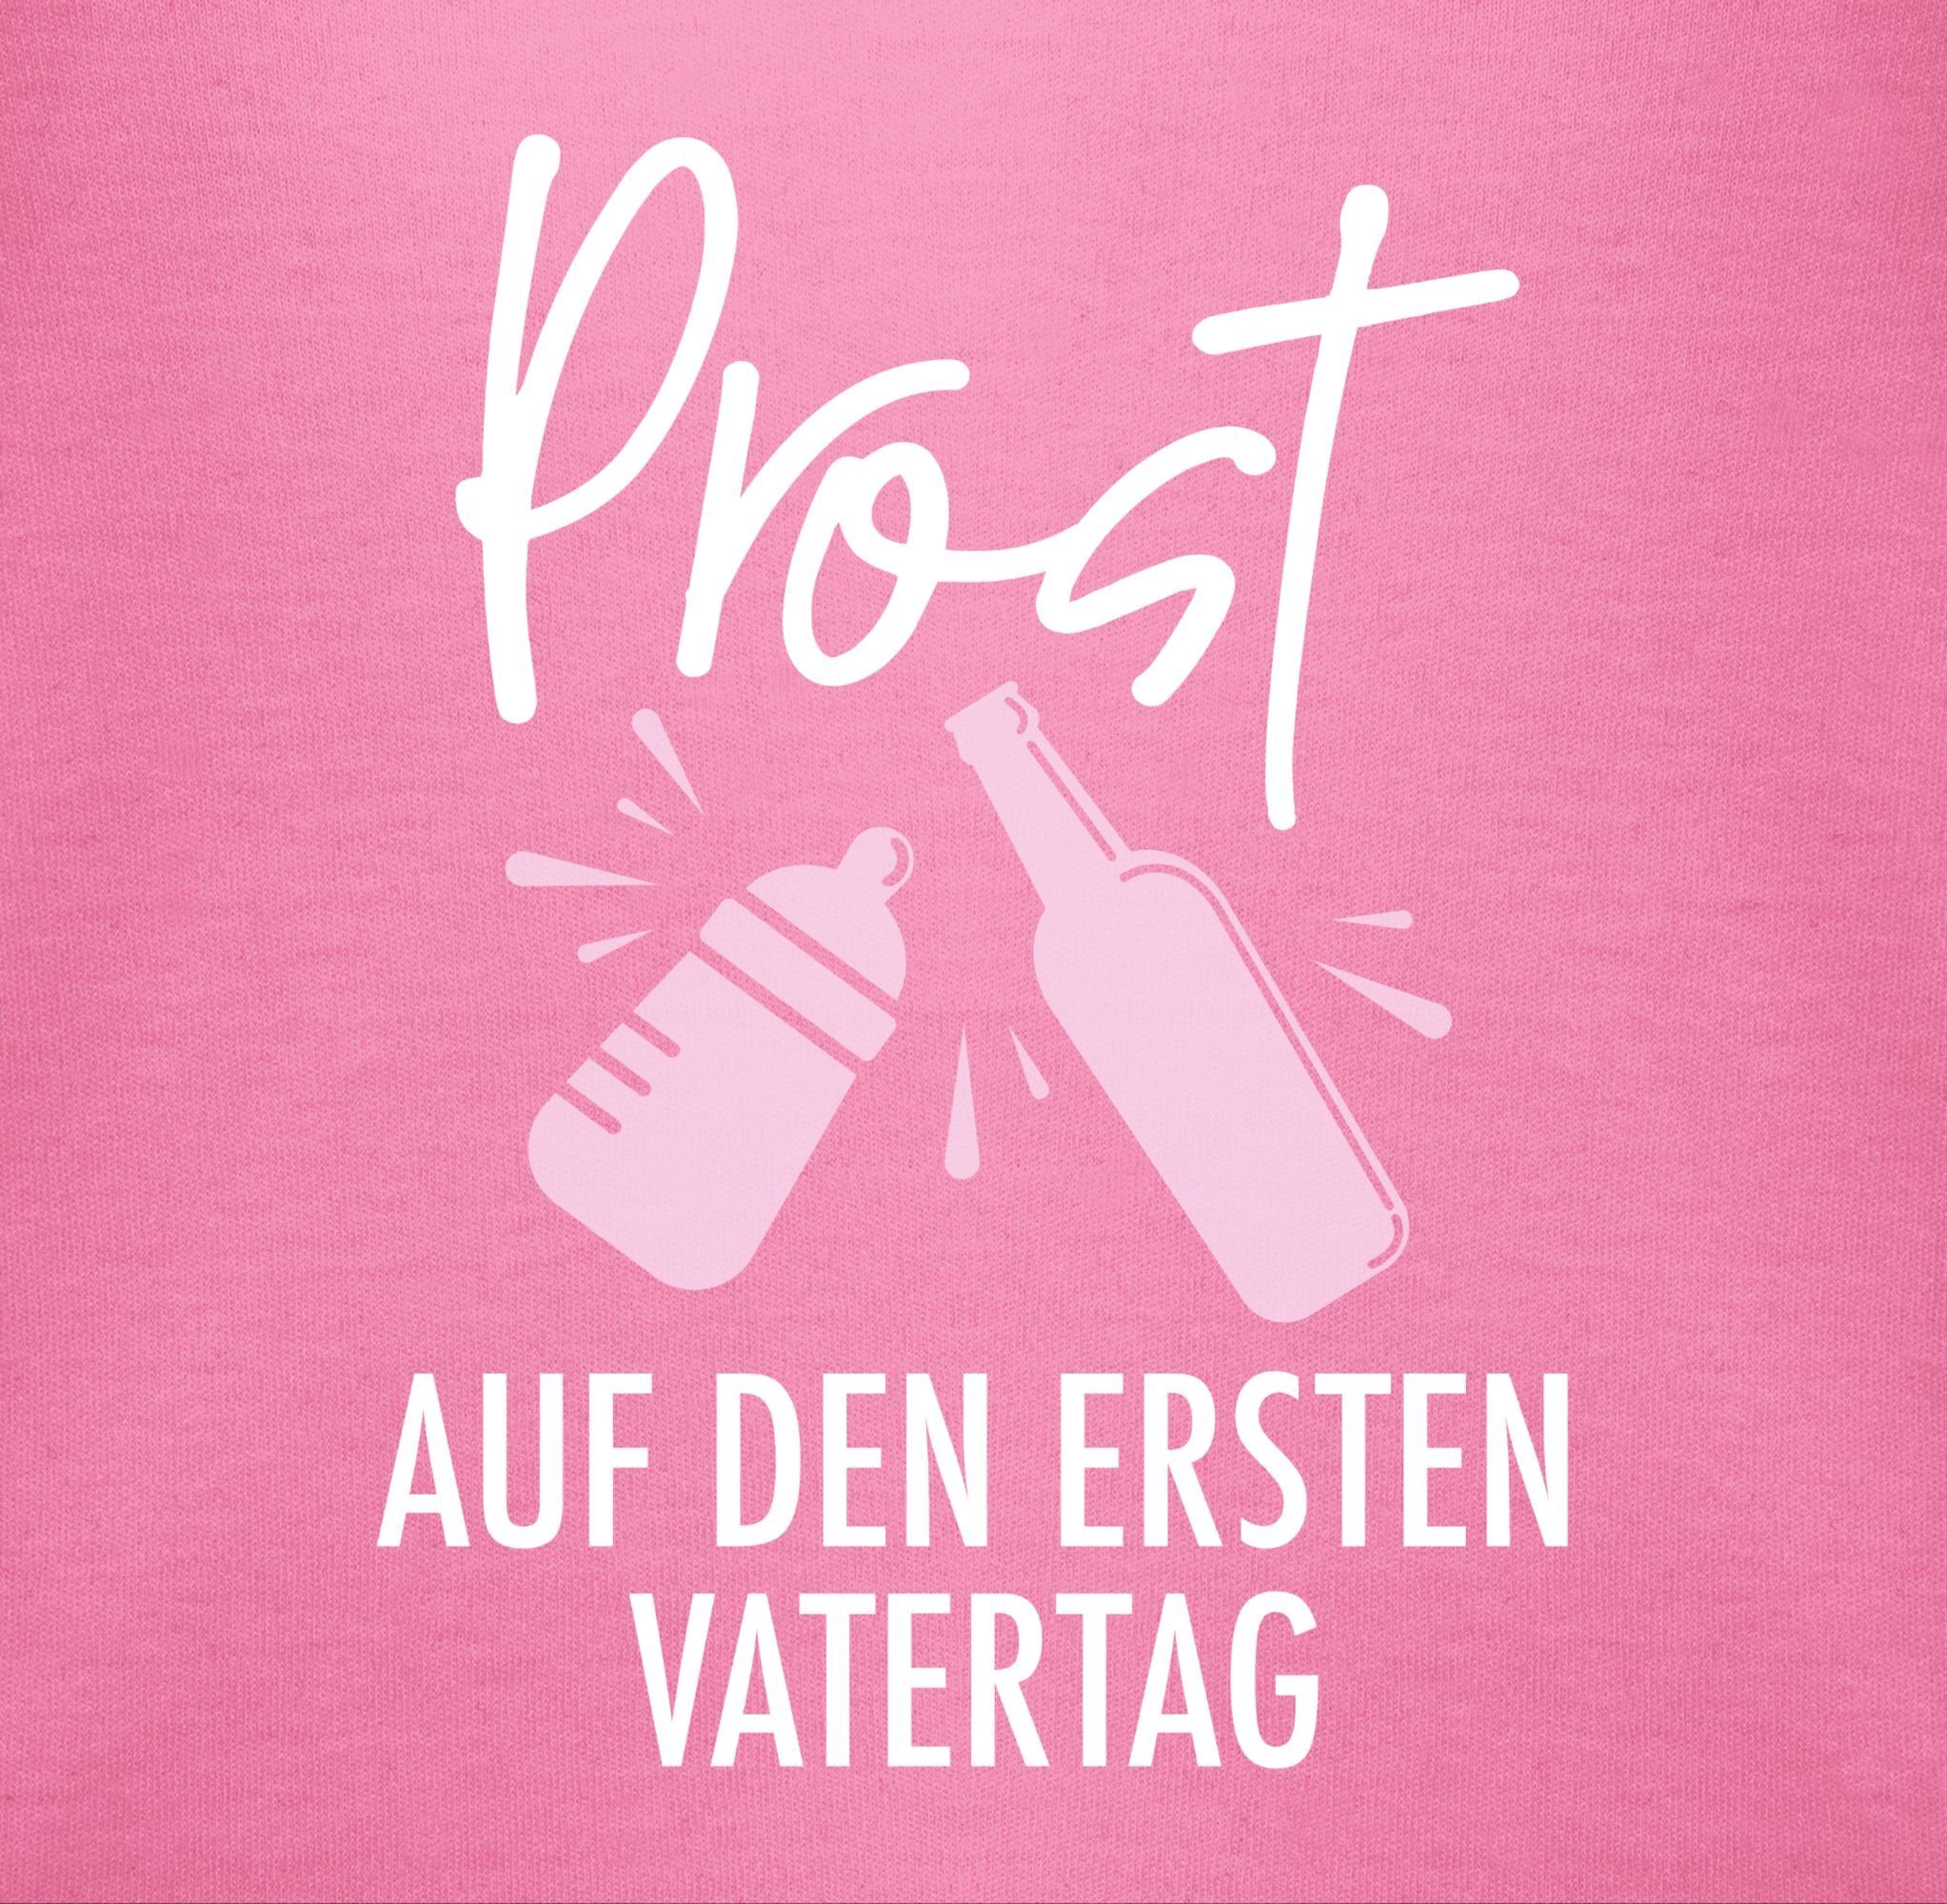 Vatertag 2 den weiß/rosa Vatertag Pink auf Shirtbody Geschenk Baby - Prost Shirtracer ersten